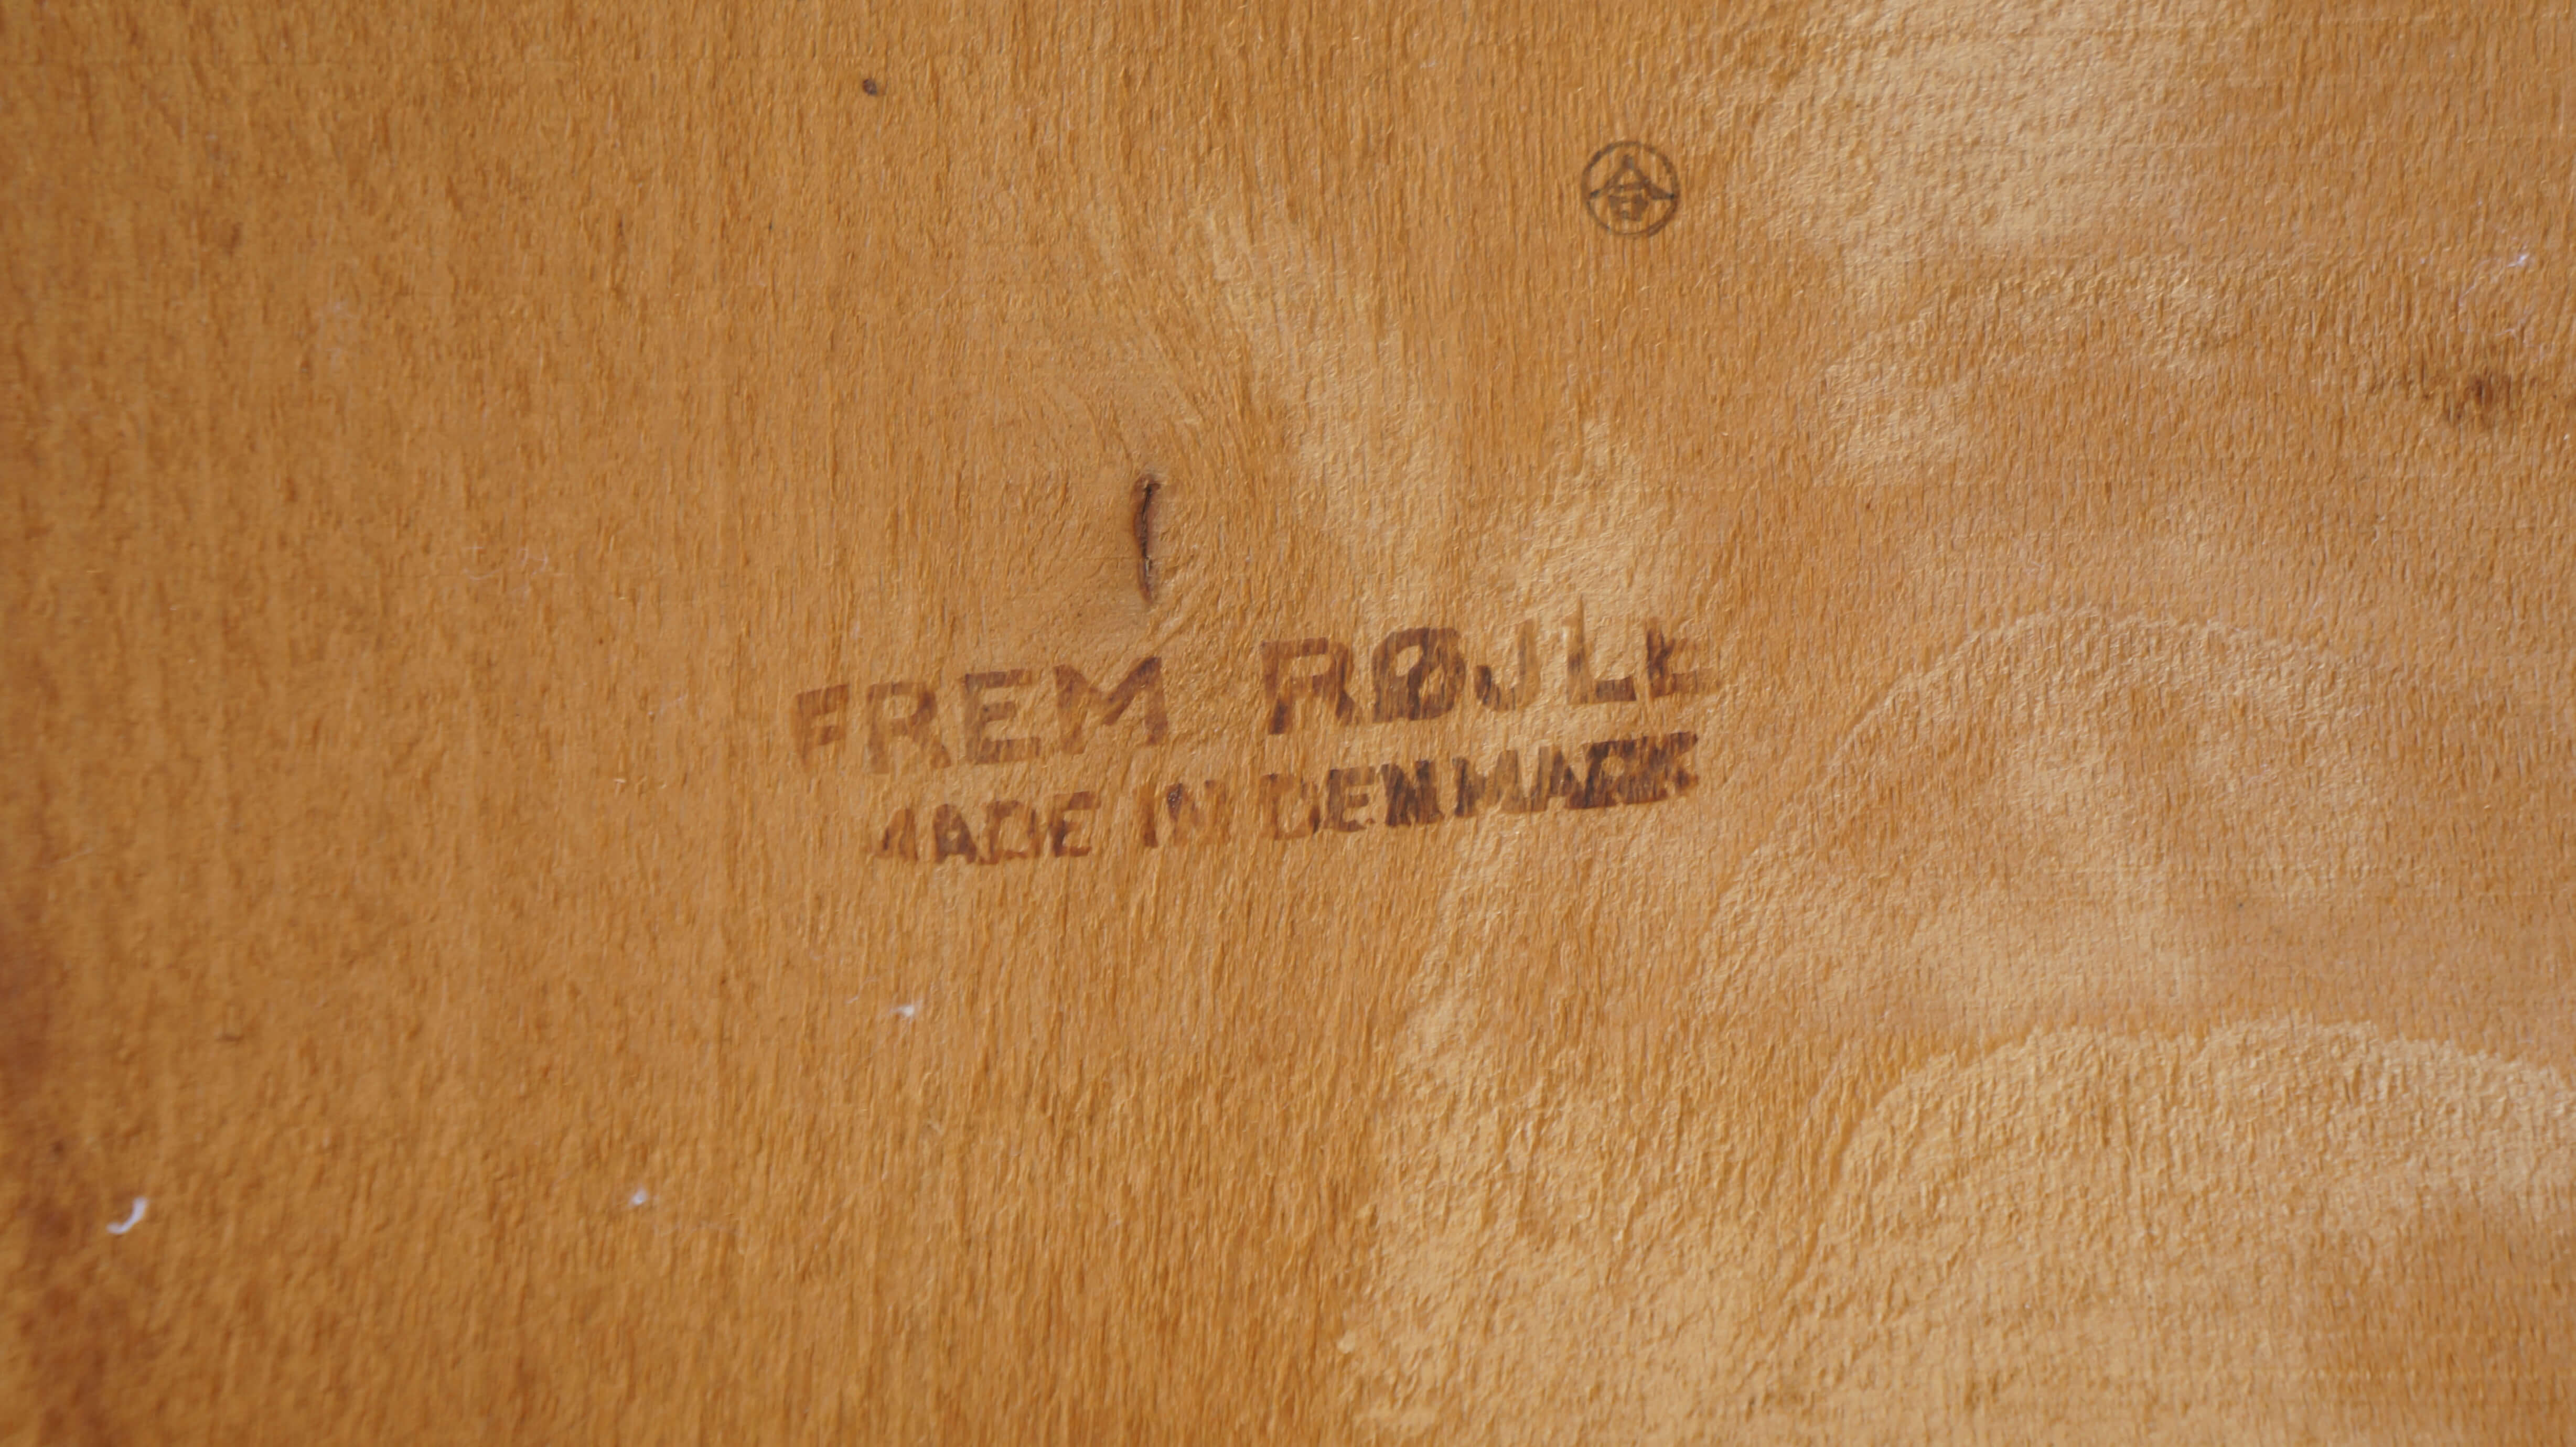 FremRojle Hans Olsen design dining chair made in Denmark / デンマーク製 ハンス オルセン デザイン ダイニングチェア